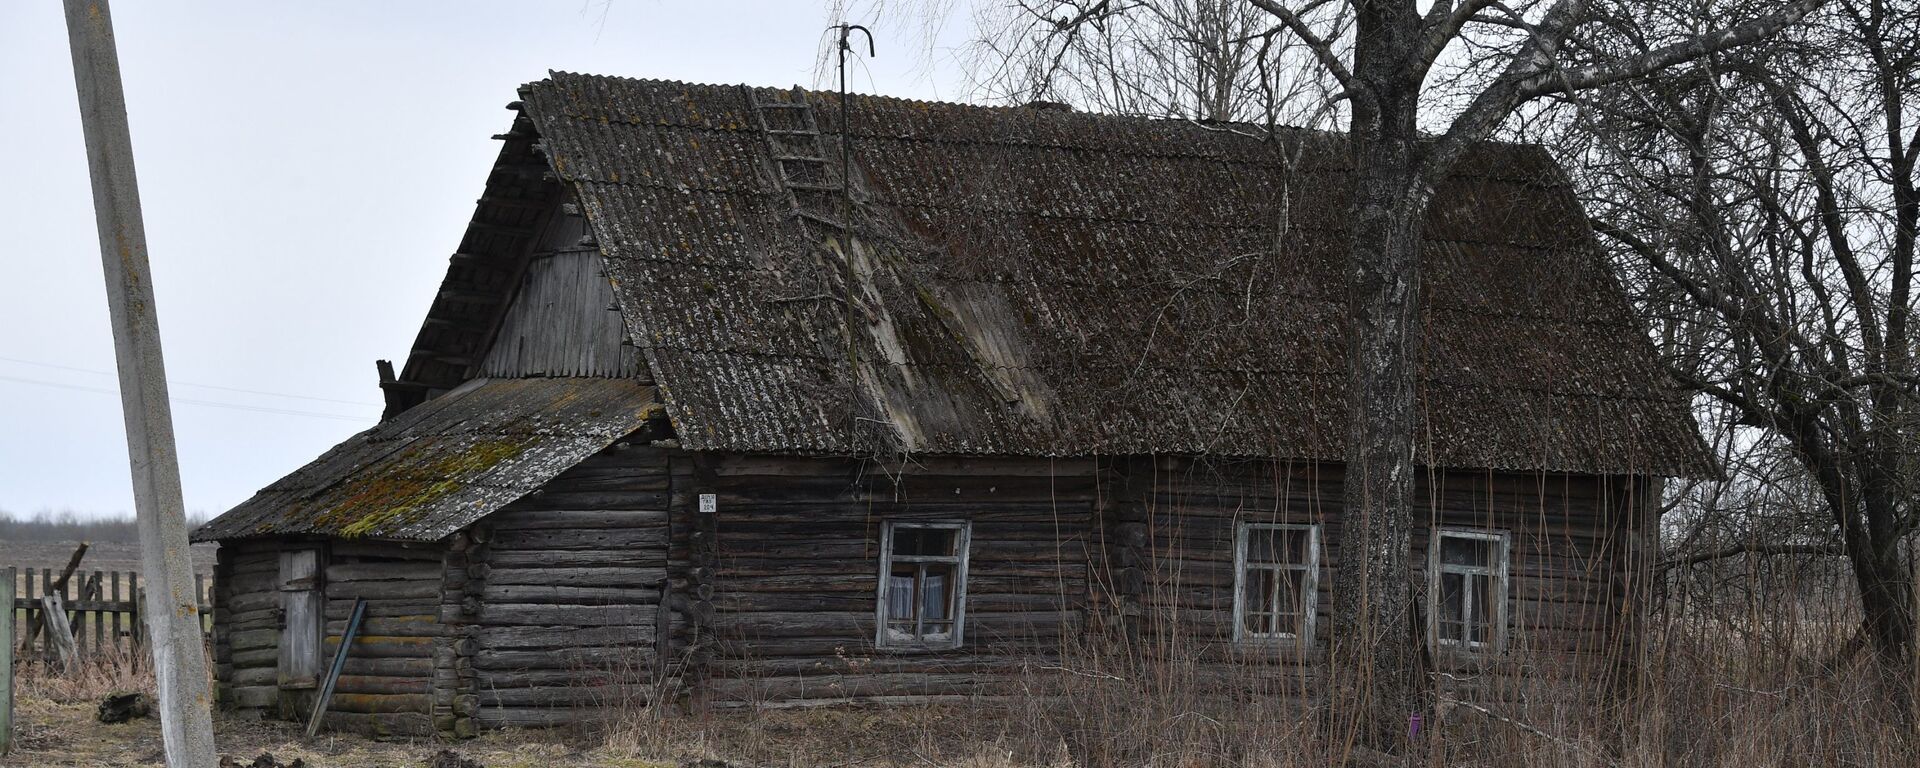 Старый дом в деревне - Sputnik Беларусь, 1920, 27.09.2021